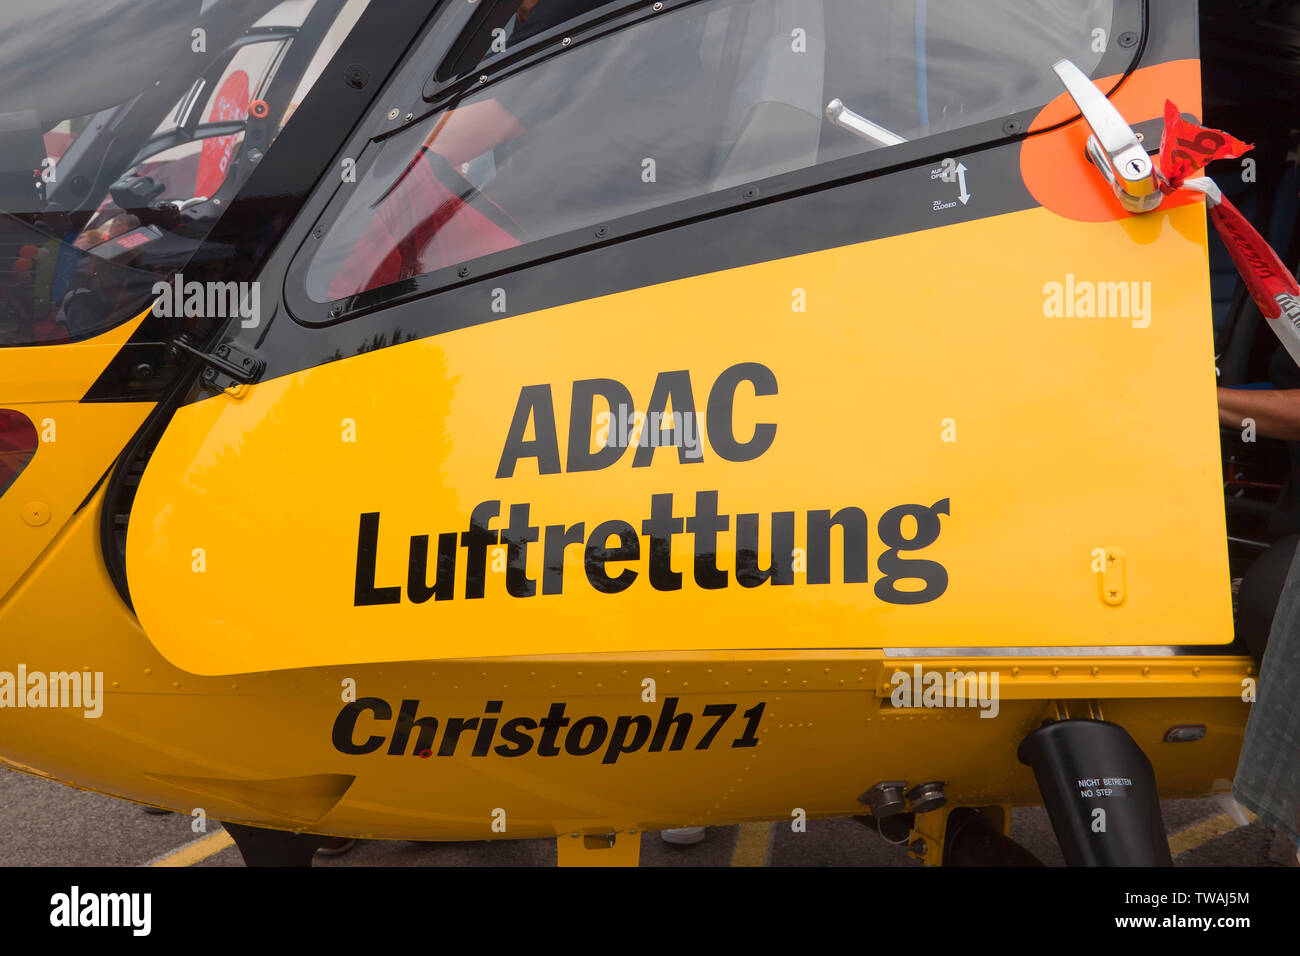 ADAC Luftrettung gGmbH fait partie de la fonction de système de secours en Allemagne et est alerté par le numéro d'urgence européen 112 Banque D'Images